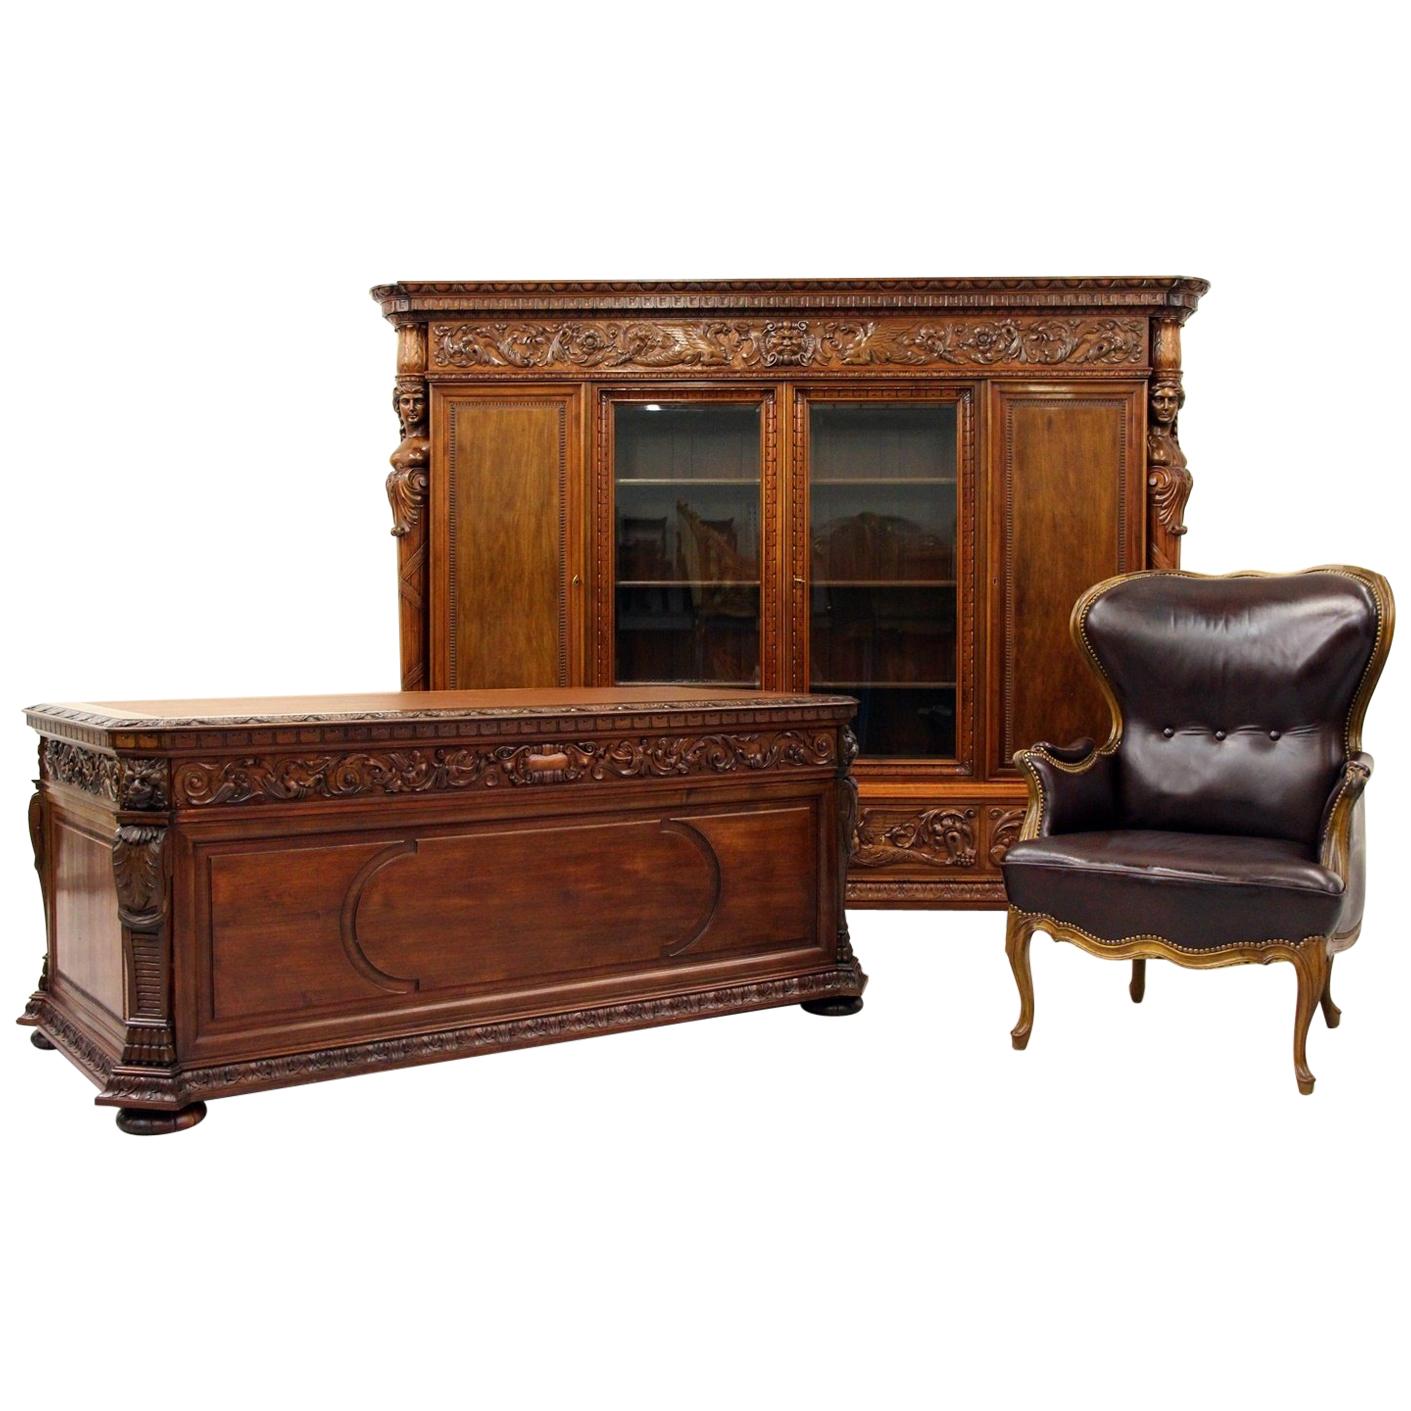 Herrenzimmer Cabinet Bookcase Antique Desk Office Furniture For Sale